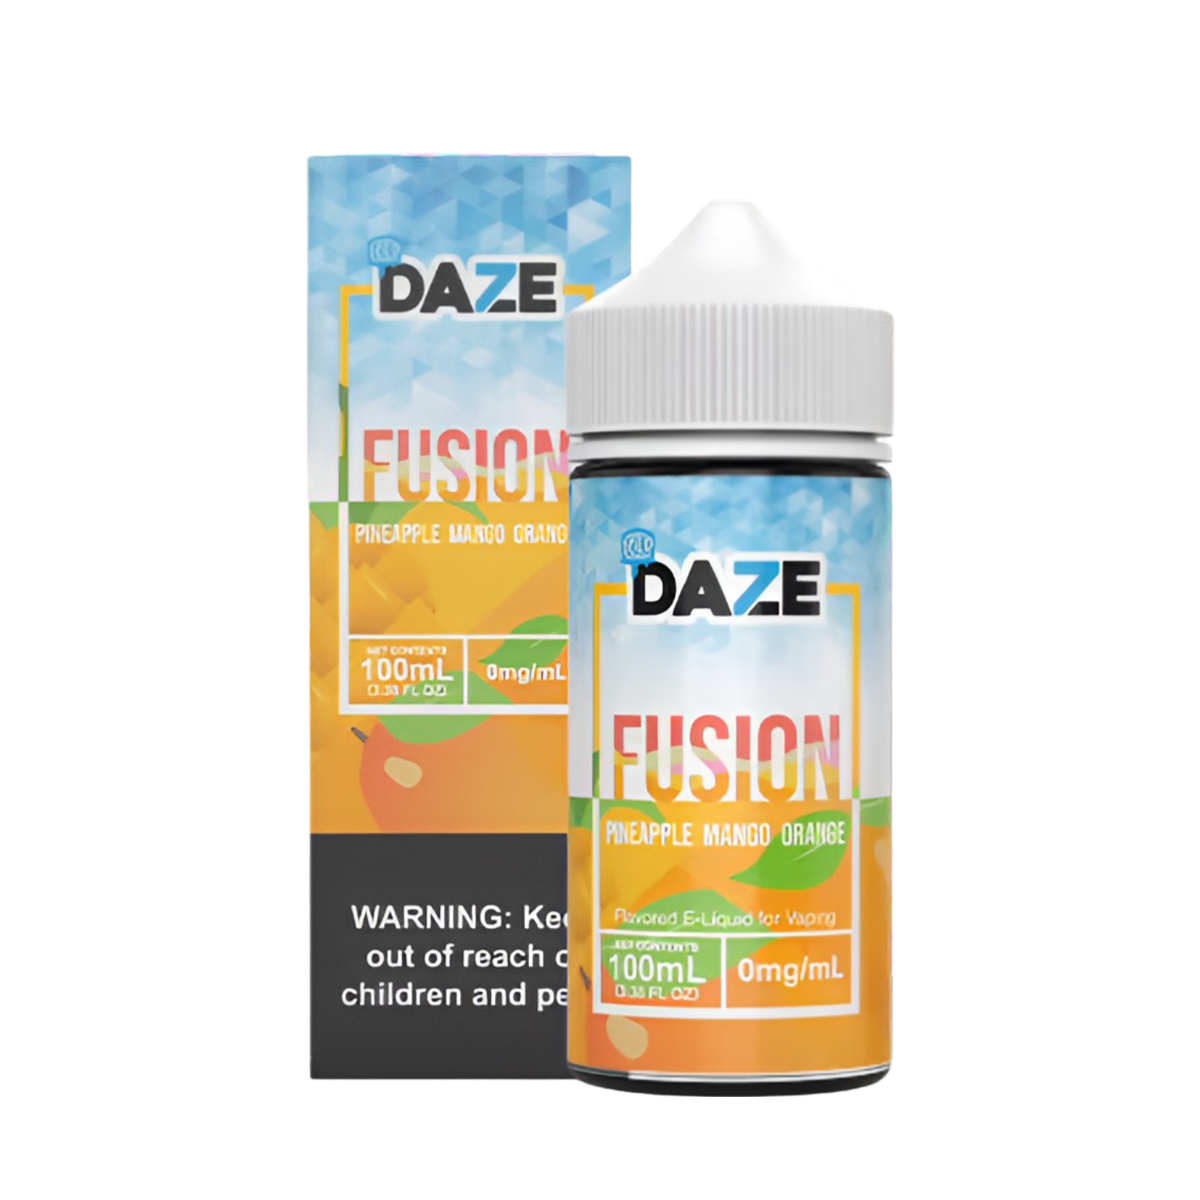 7 Daze Fusion Iced Freebase Vape Juice 0 Mg 100 ML Pineapple Mango Orange Iced